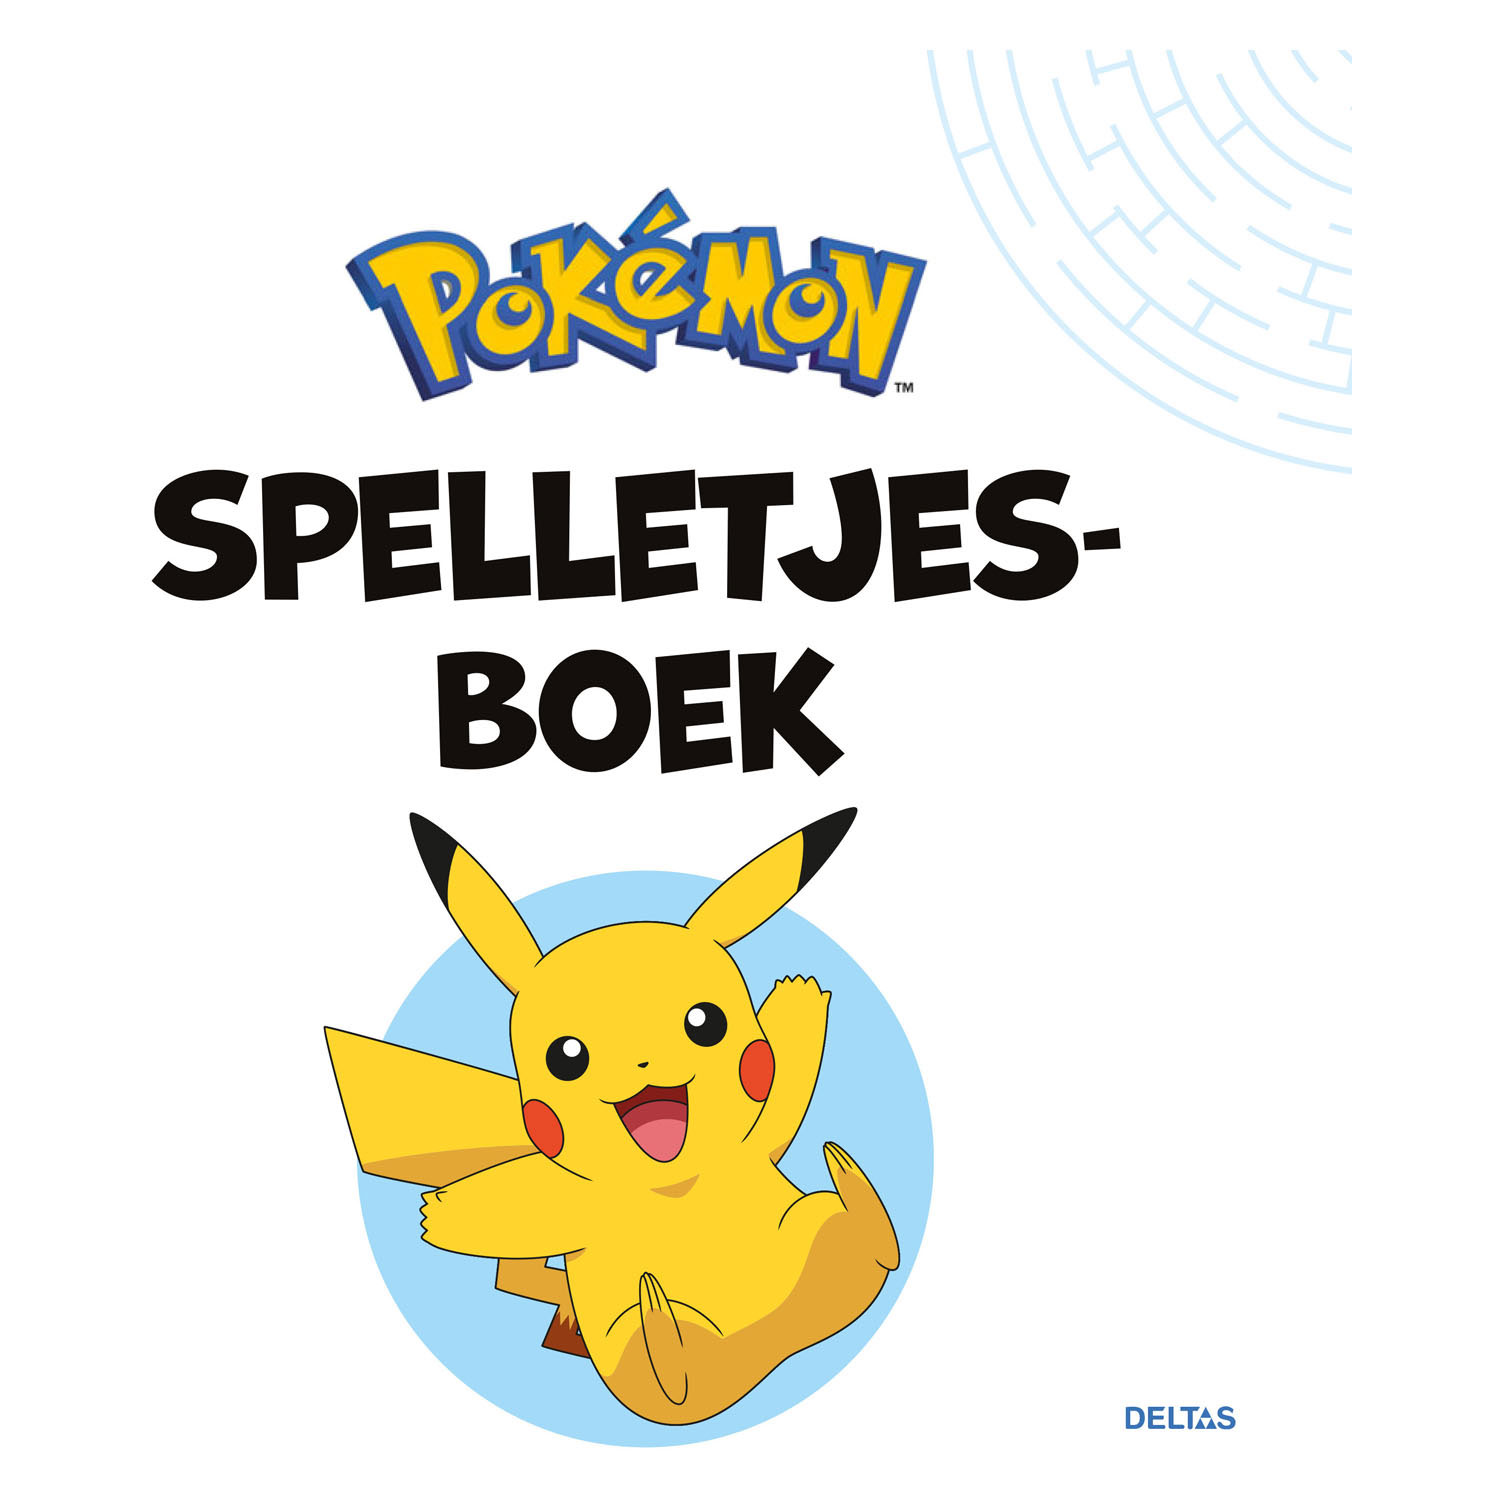 Pokémon Spelletjesboek